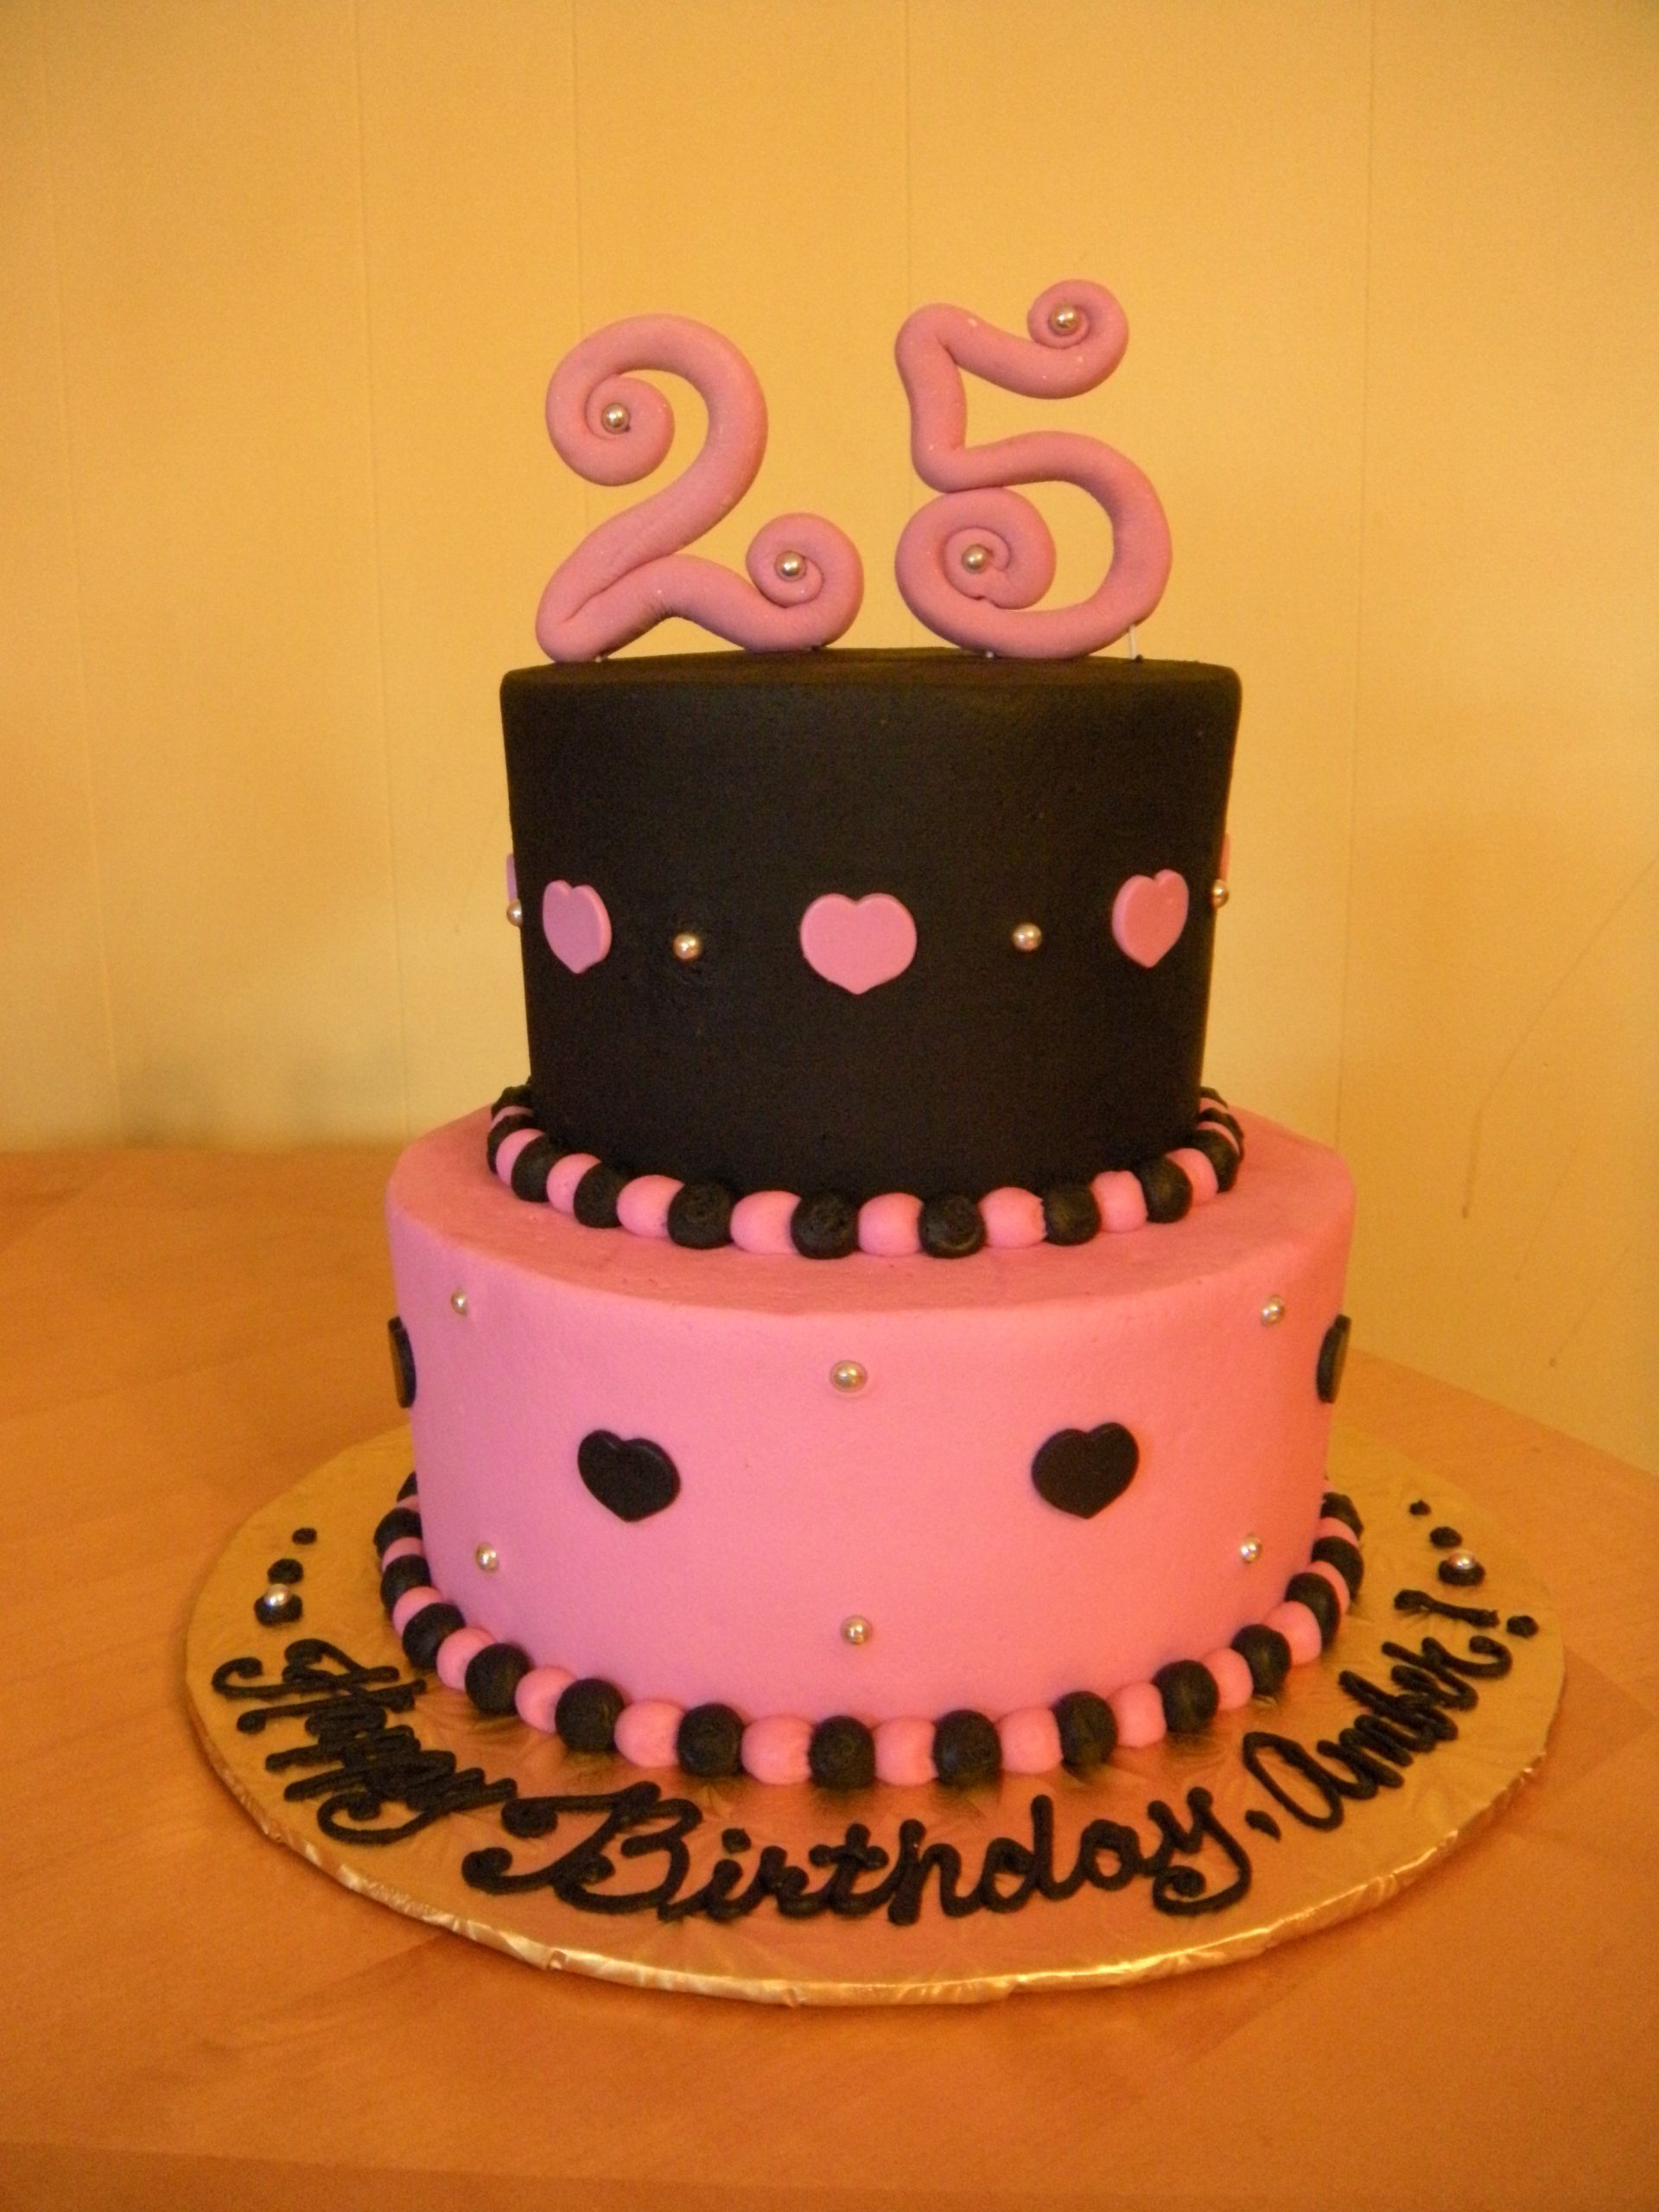 25th Birthday Cake Ideas
 25th Birthday Cake Ideas For Women